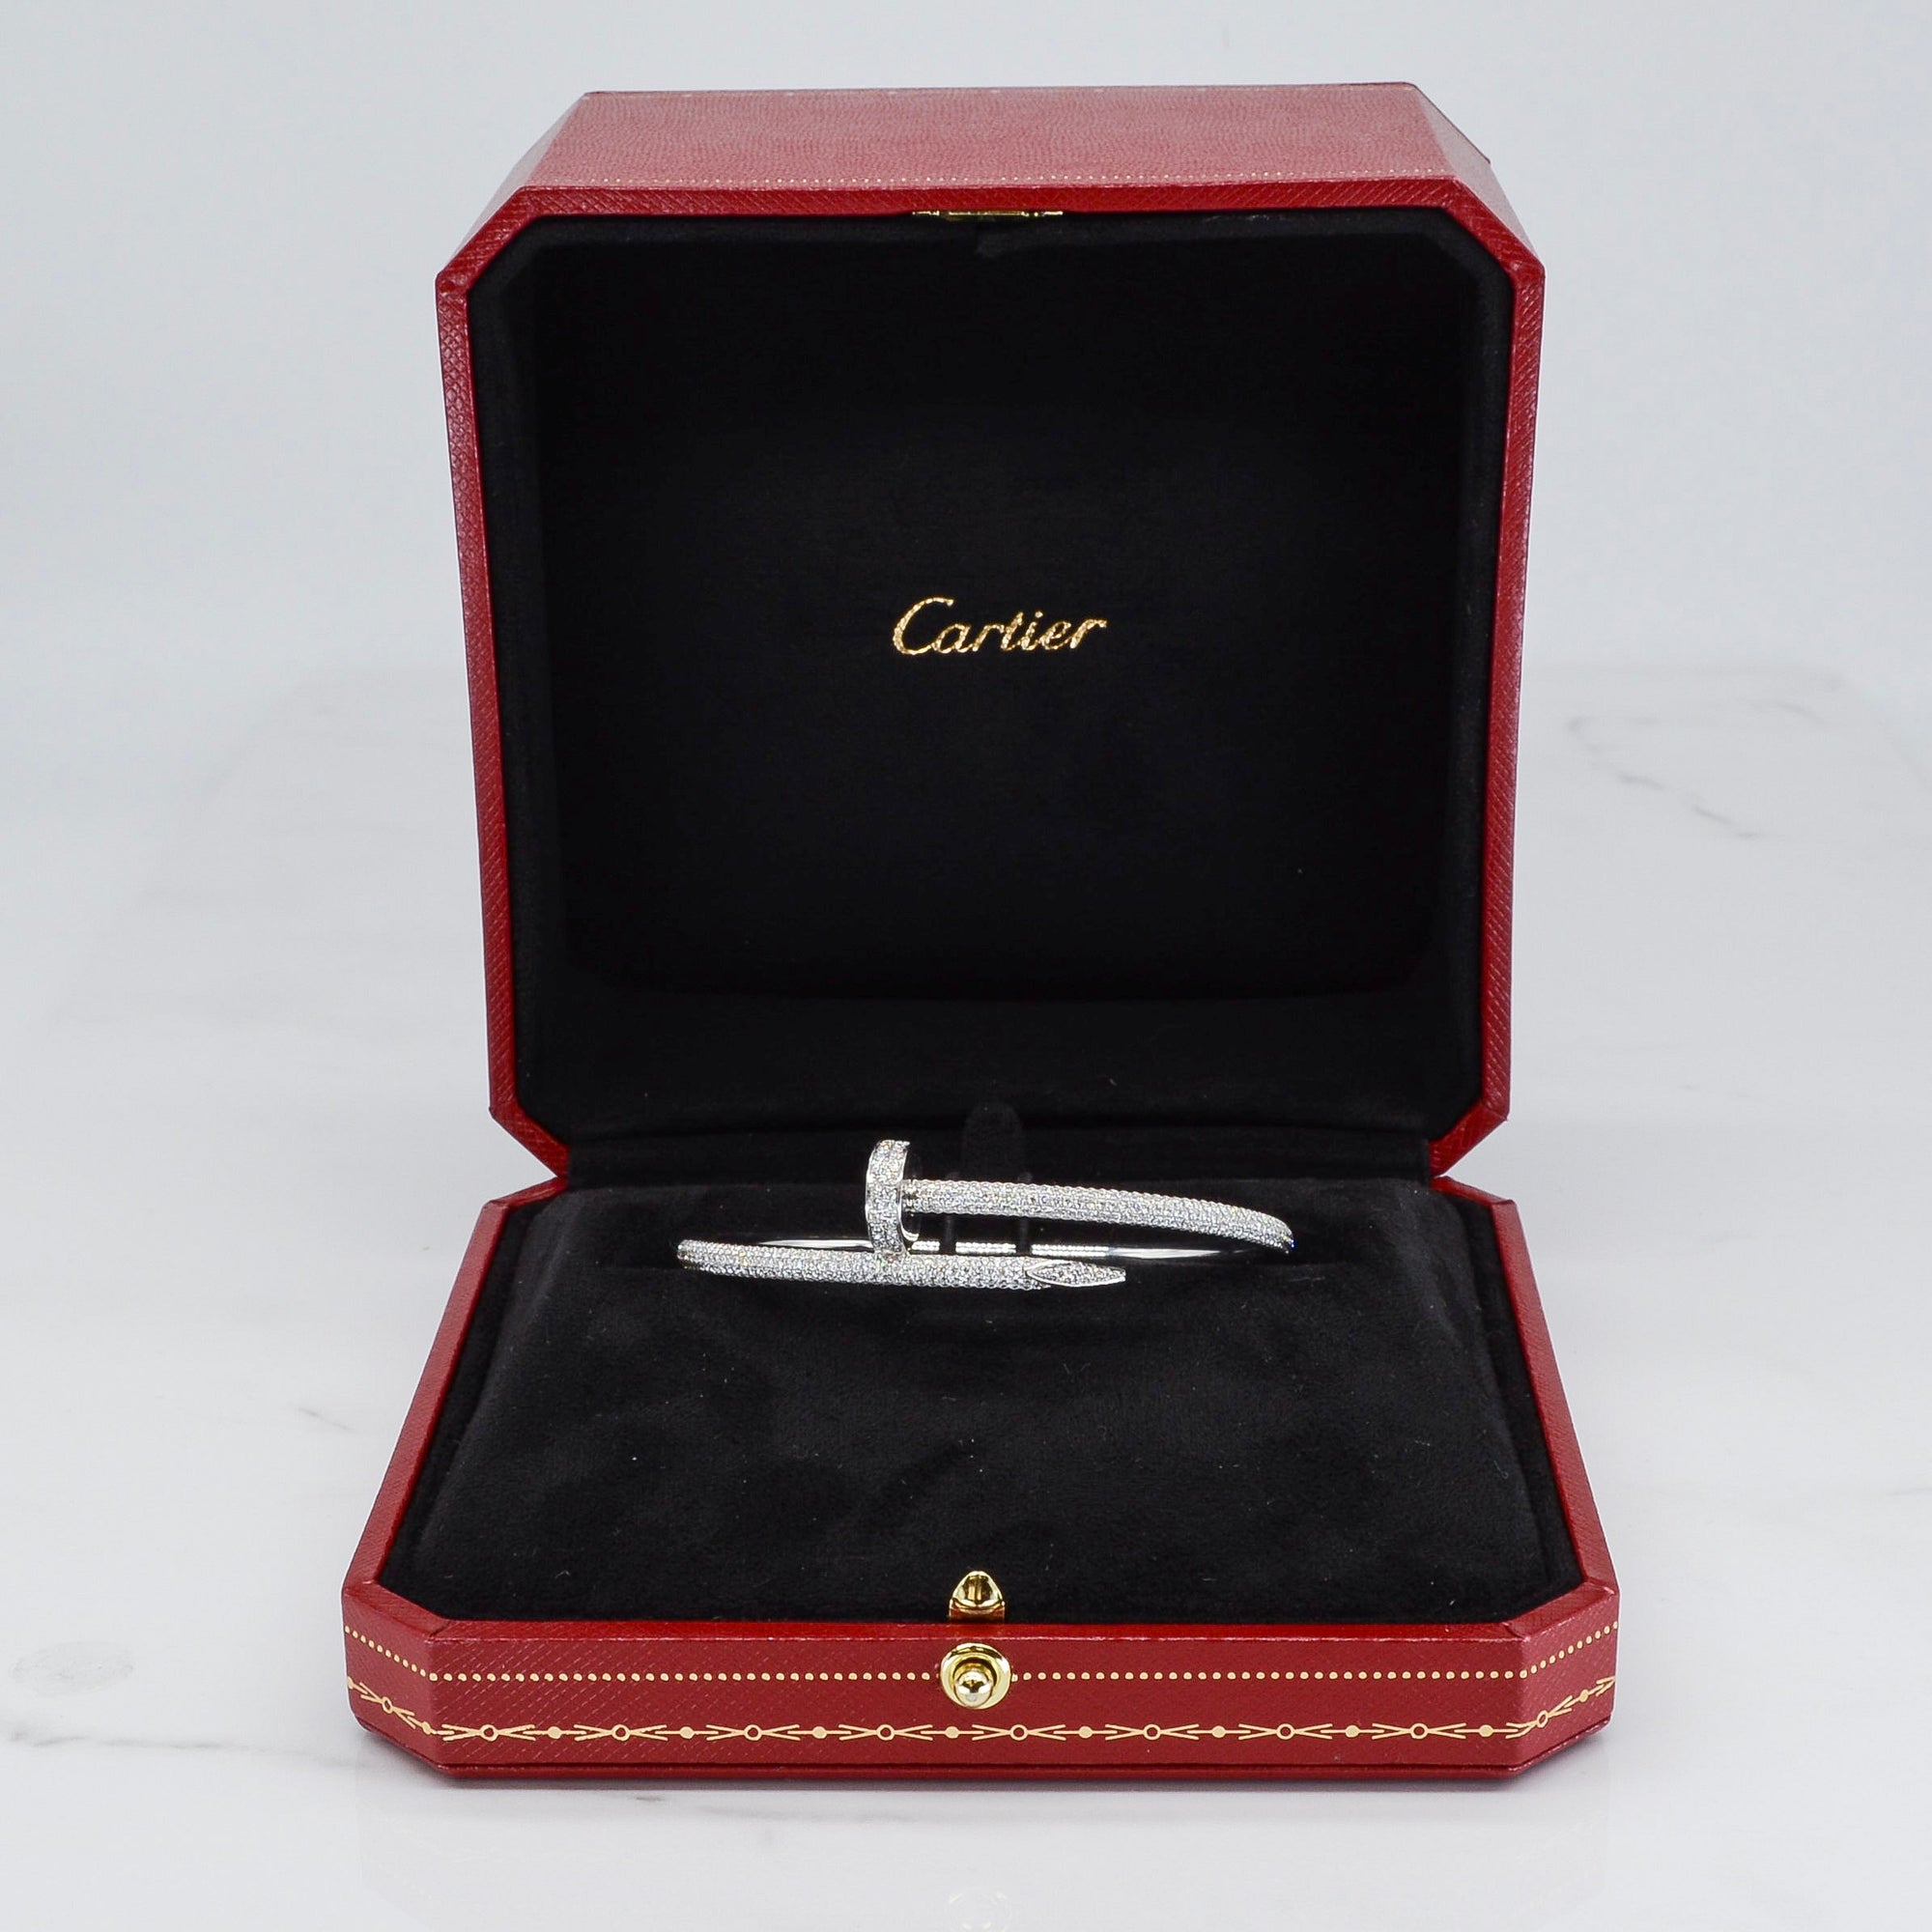 'Cartier' Juste Un Clou Diamond Bracelet